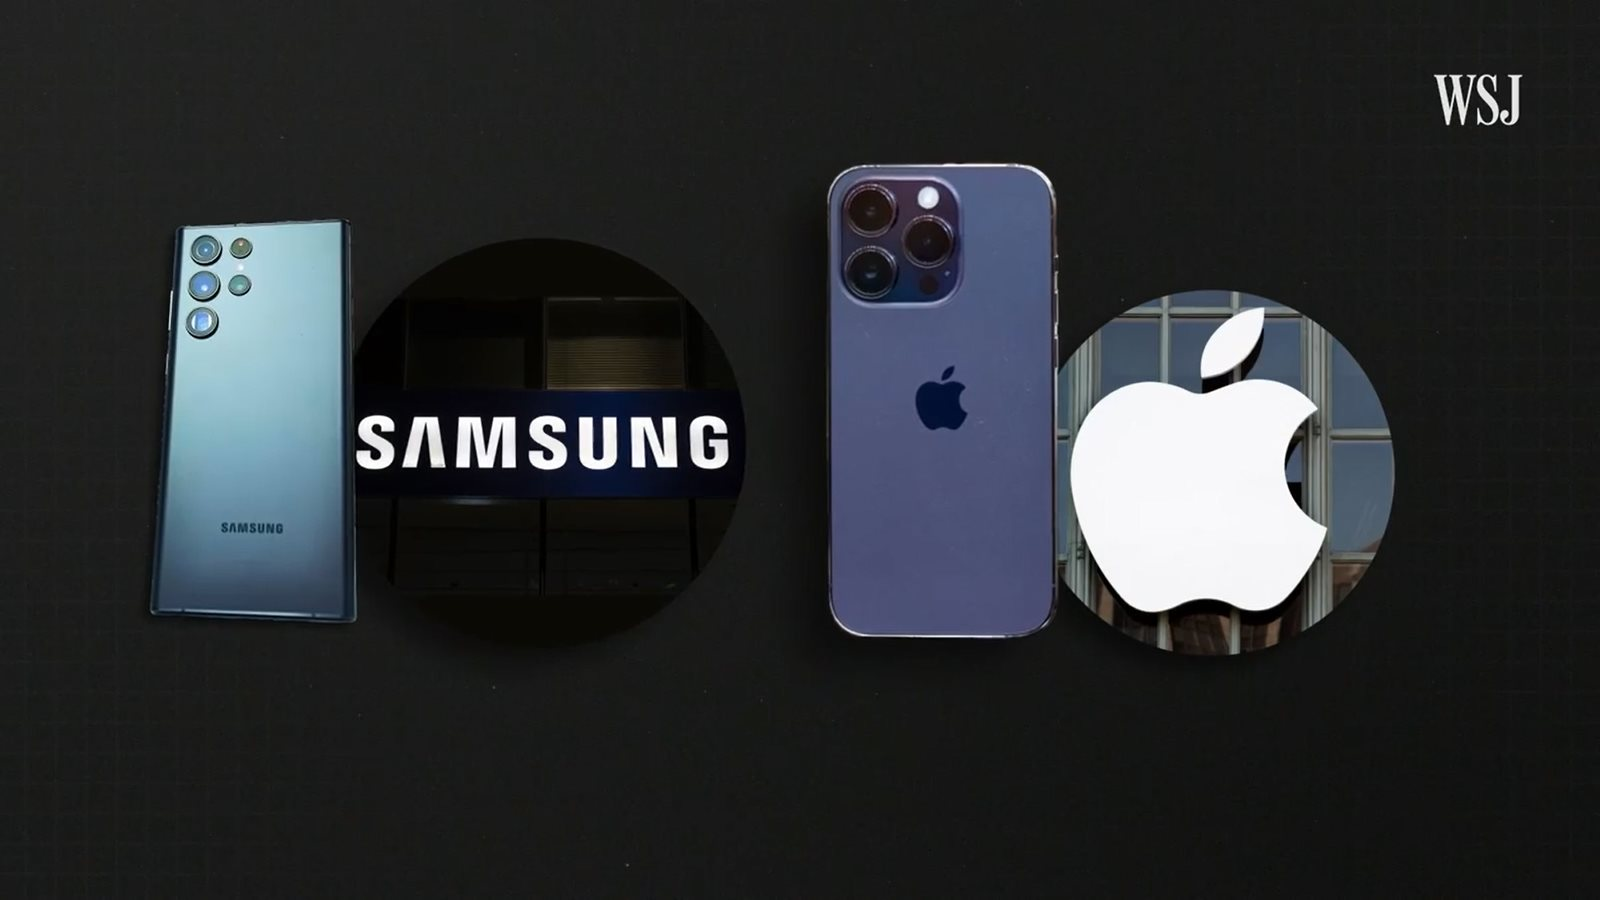 WSJ: Có mặt ở Việt Nam trước tạo ra lợi thế cho Samsung, nhưng Apple cũng đang làm điều tương tự - Ảnh 1.